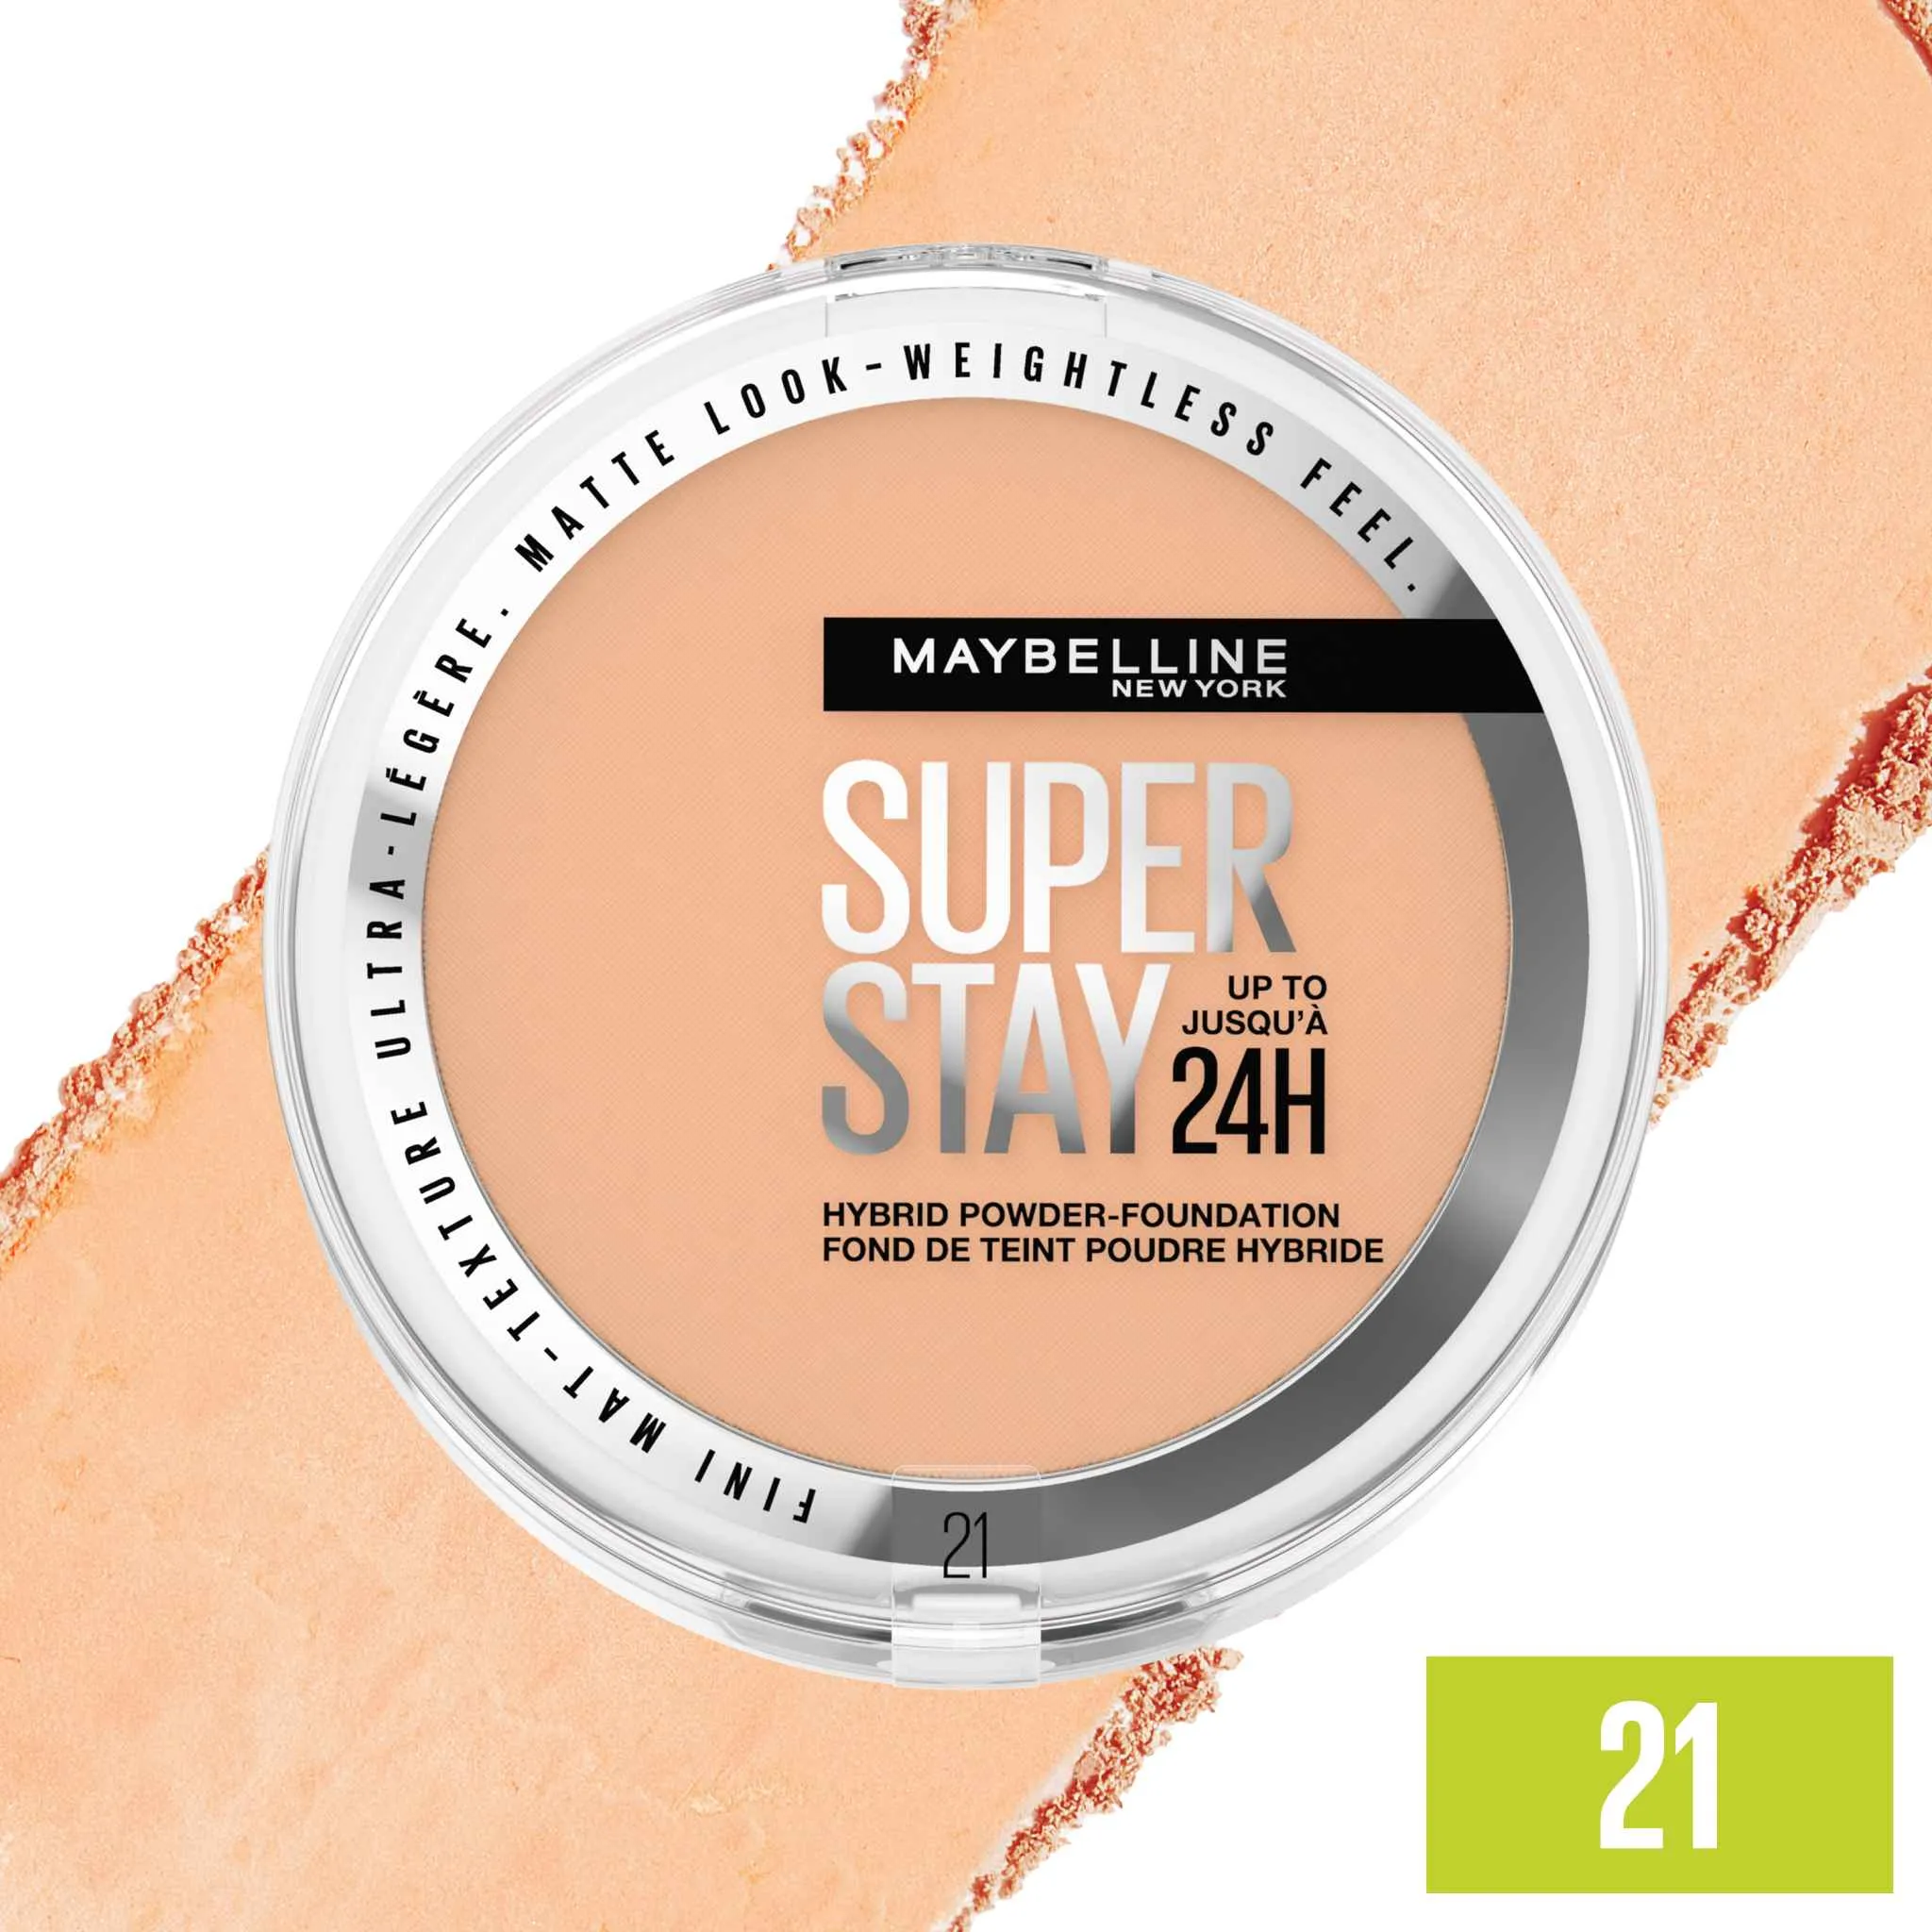 Maybelline New York SuperStay 24H Hybrid Powder-Foundation 21 make-up v púdri, 9 g 1×9 g, make-up v púdri